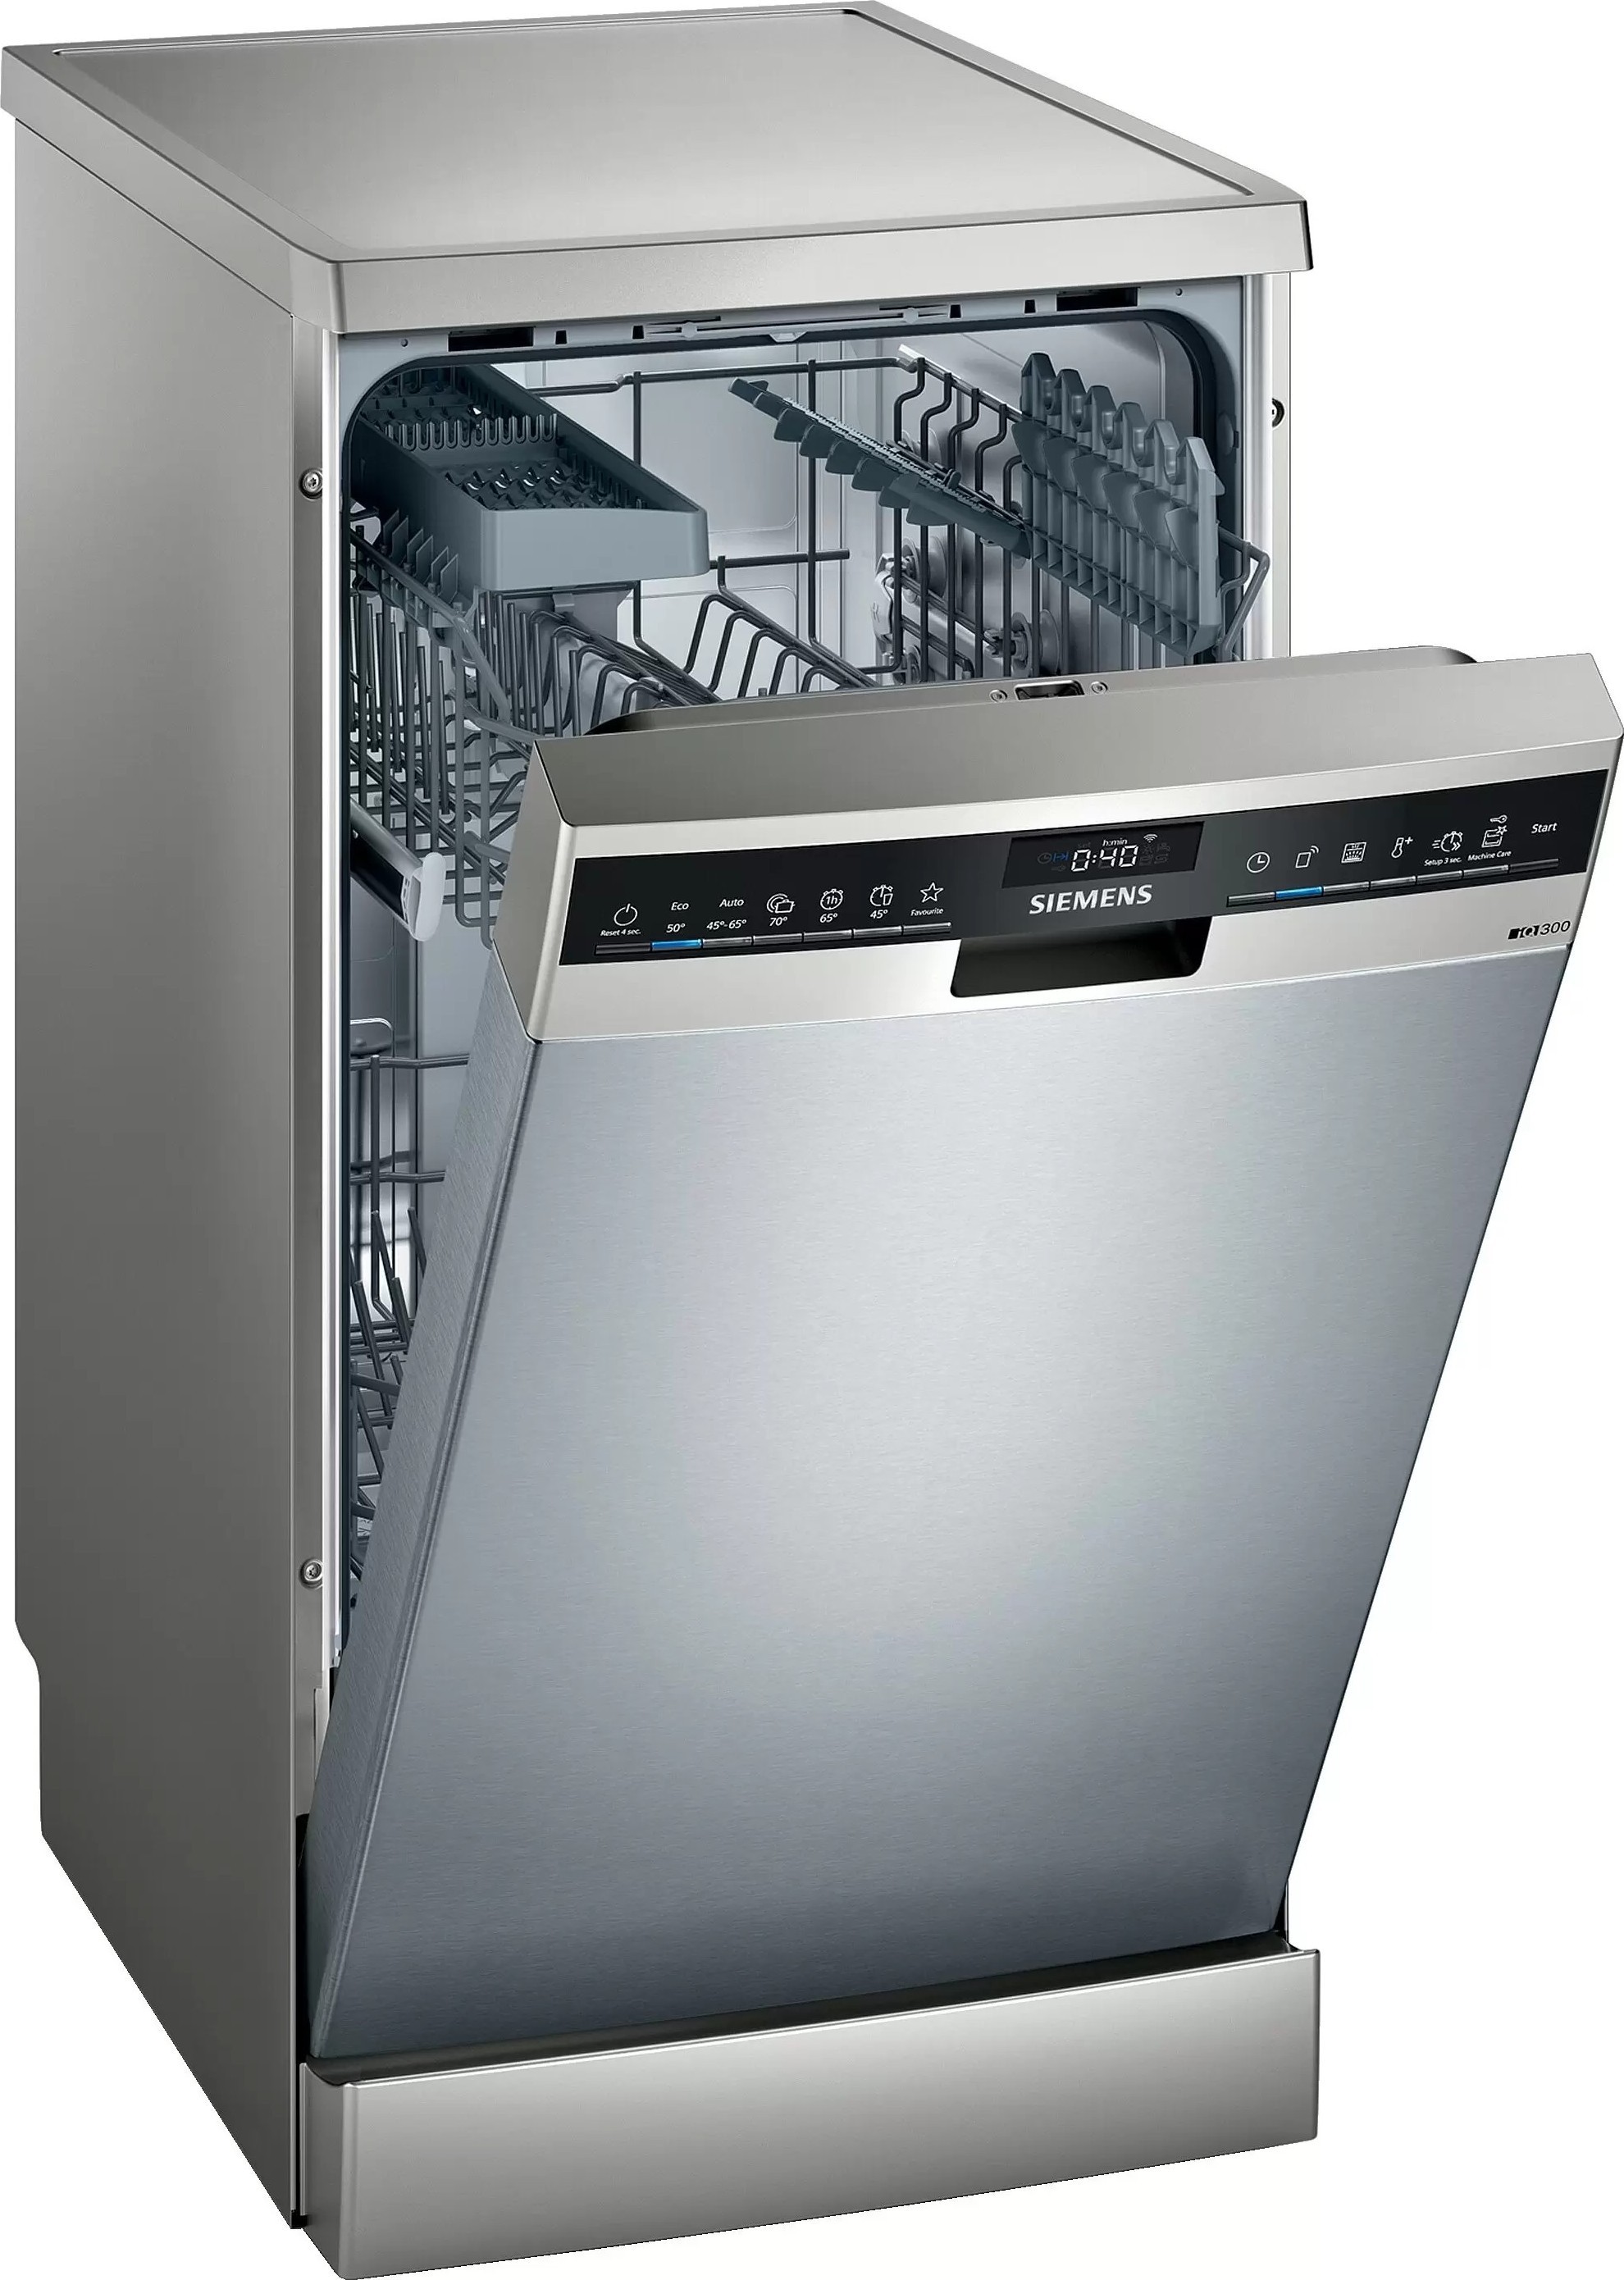 Днс купить посудомоечную встраиваемую. Посудомоечная машина Siemens SR 25m884. Посудомоечная машина Siemens iq500 SR 256i00 te. Посудомоечная машина Siemens SR 25e207. Посудомоечная машина Siemens SF 24e234.